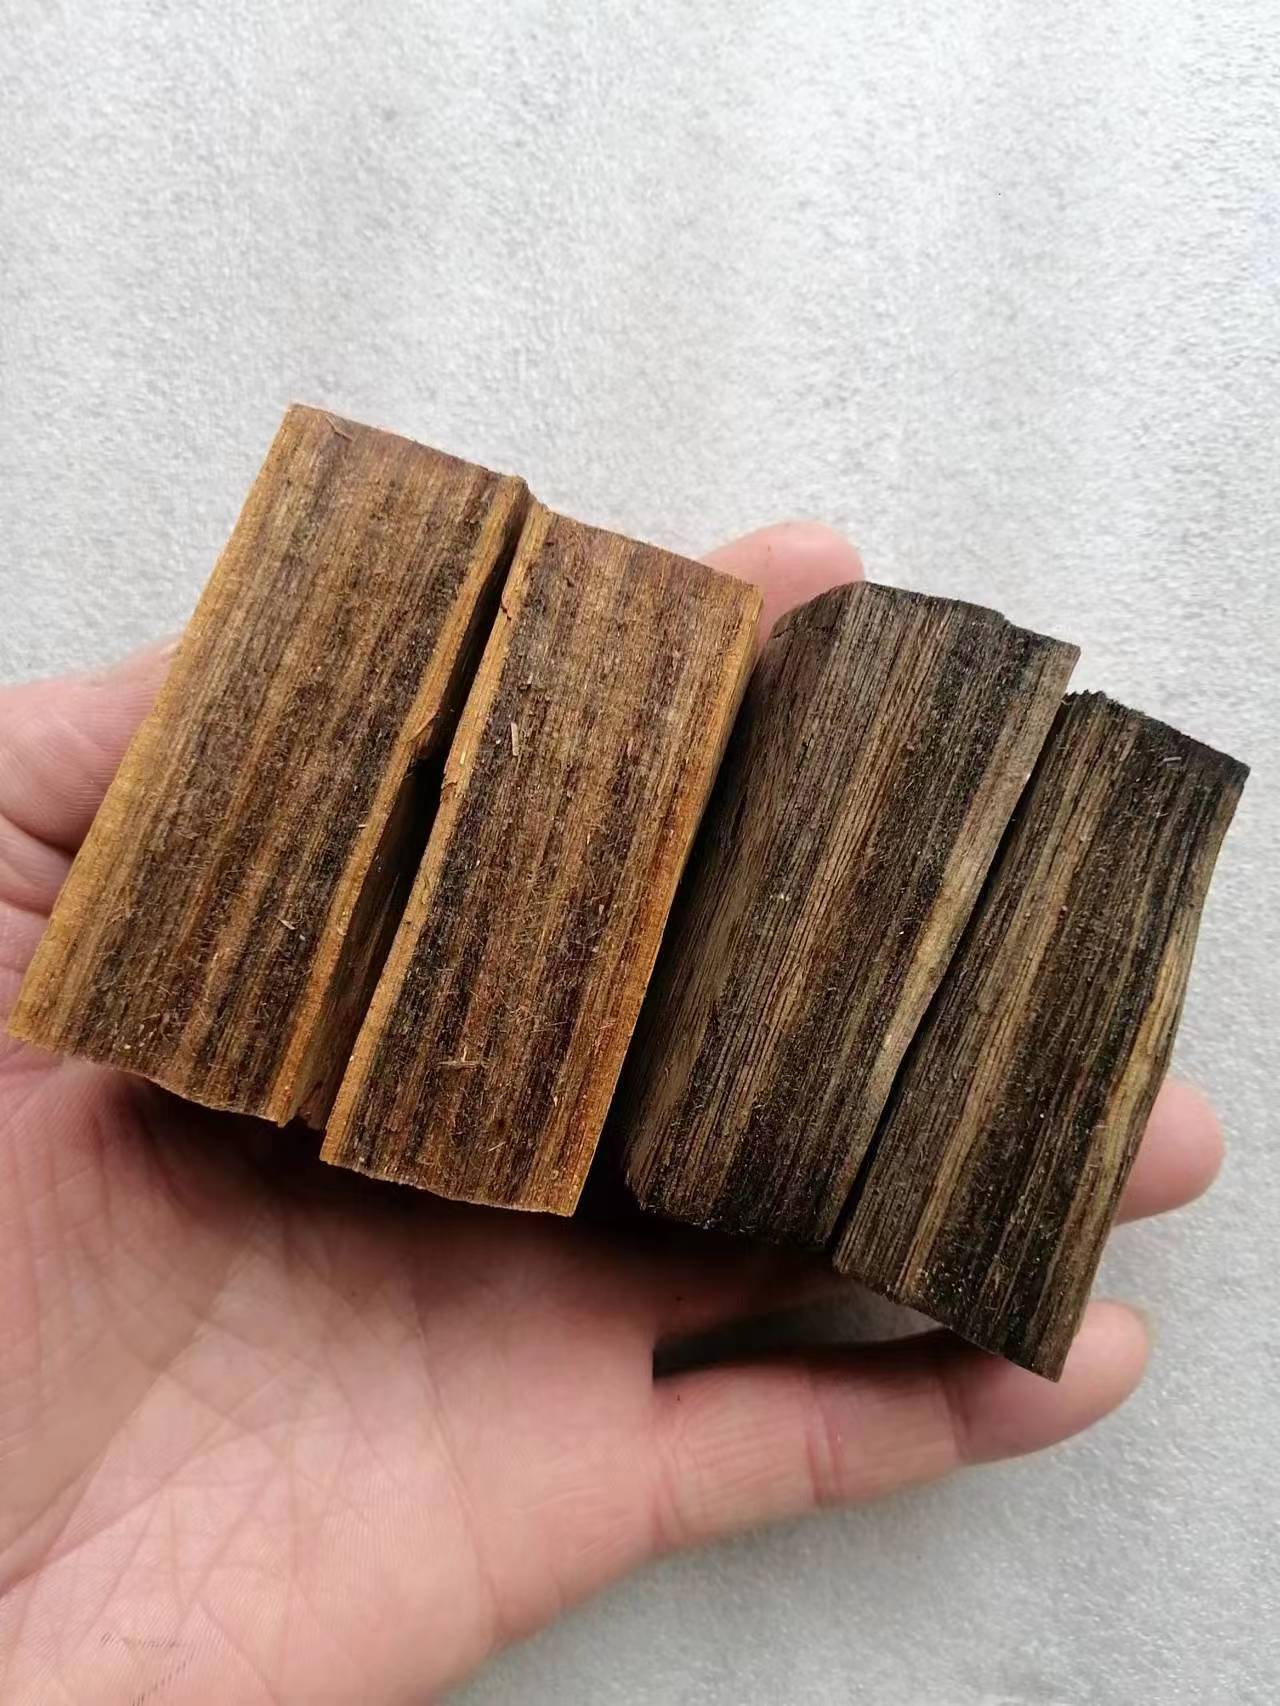 陕西一道林化厂家研发生产木美啦净味型木材改色剂